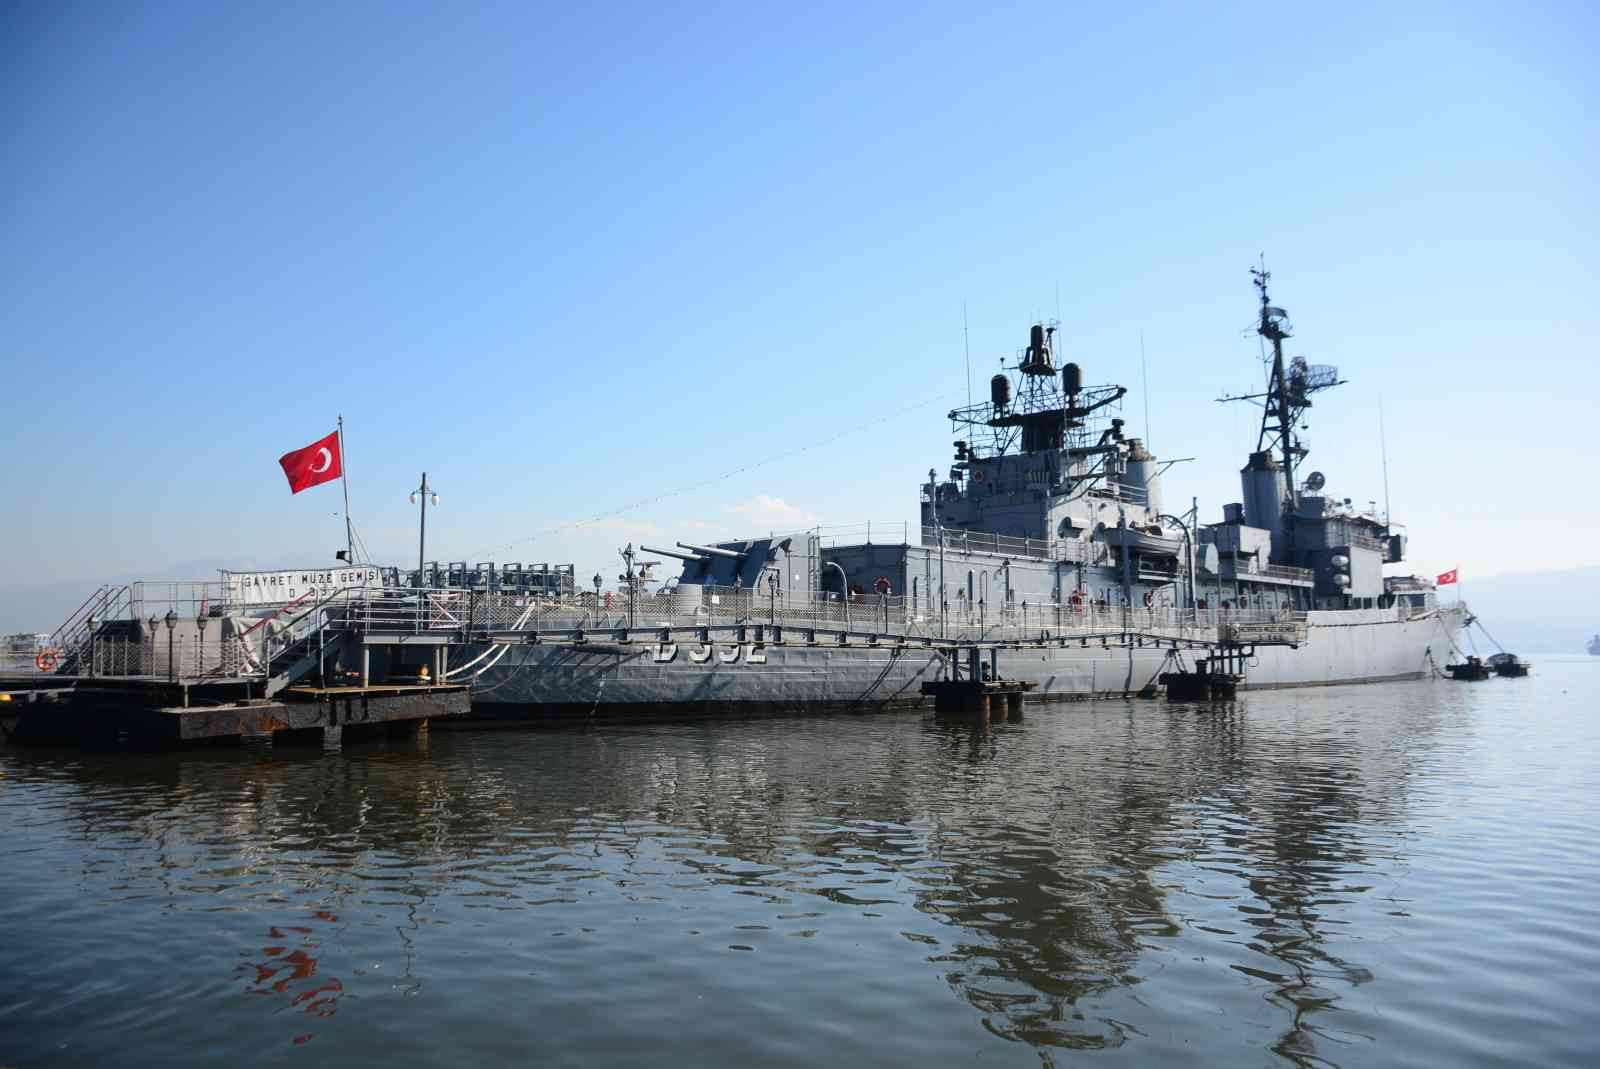 Türkiye’nin ilk müze gemisi olarak Kocaeli’de faaliyet gösteren Gayret Gemisi, 76 yıllık tarihi ve orijinalliğiyle ilk günkü gibi ayakta duruyor ...